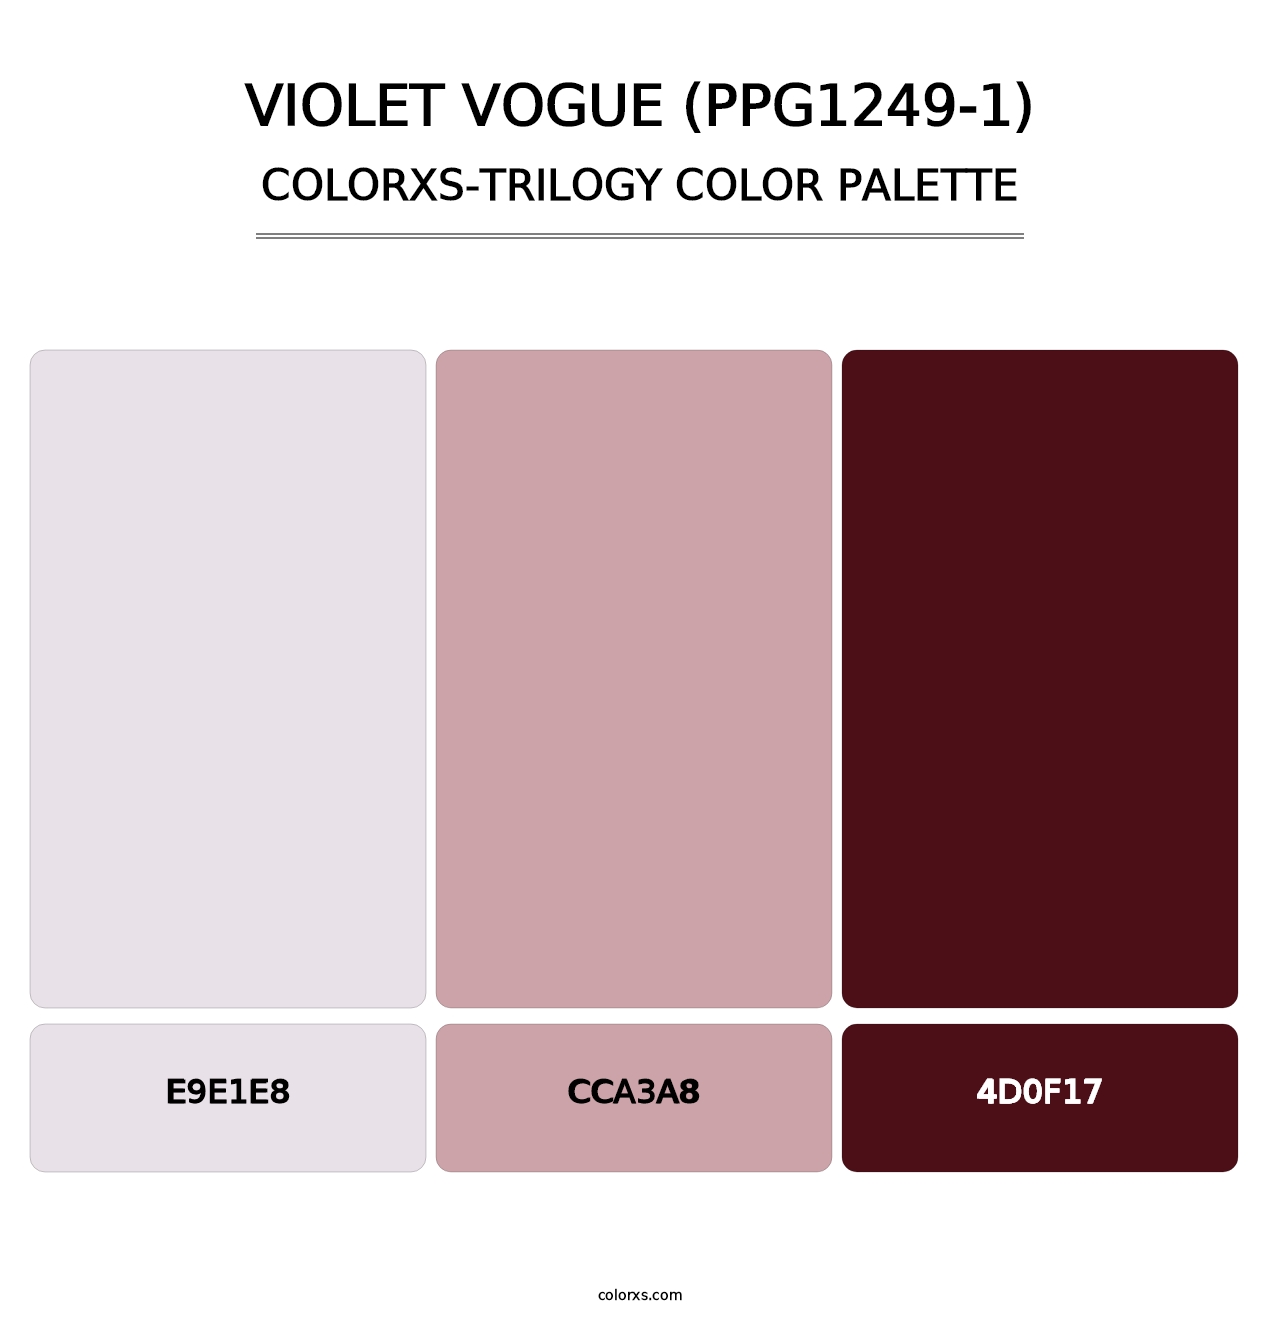 Violet Vogue (PPG1249-1) - Colorxs Trilogy Palette